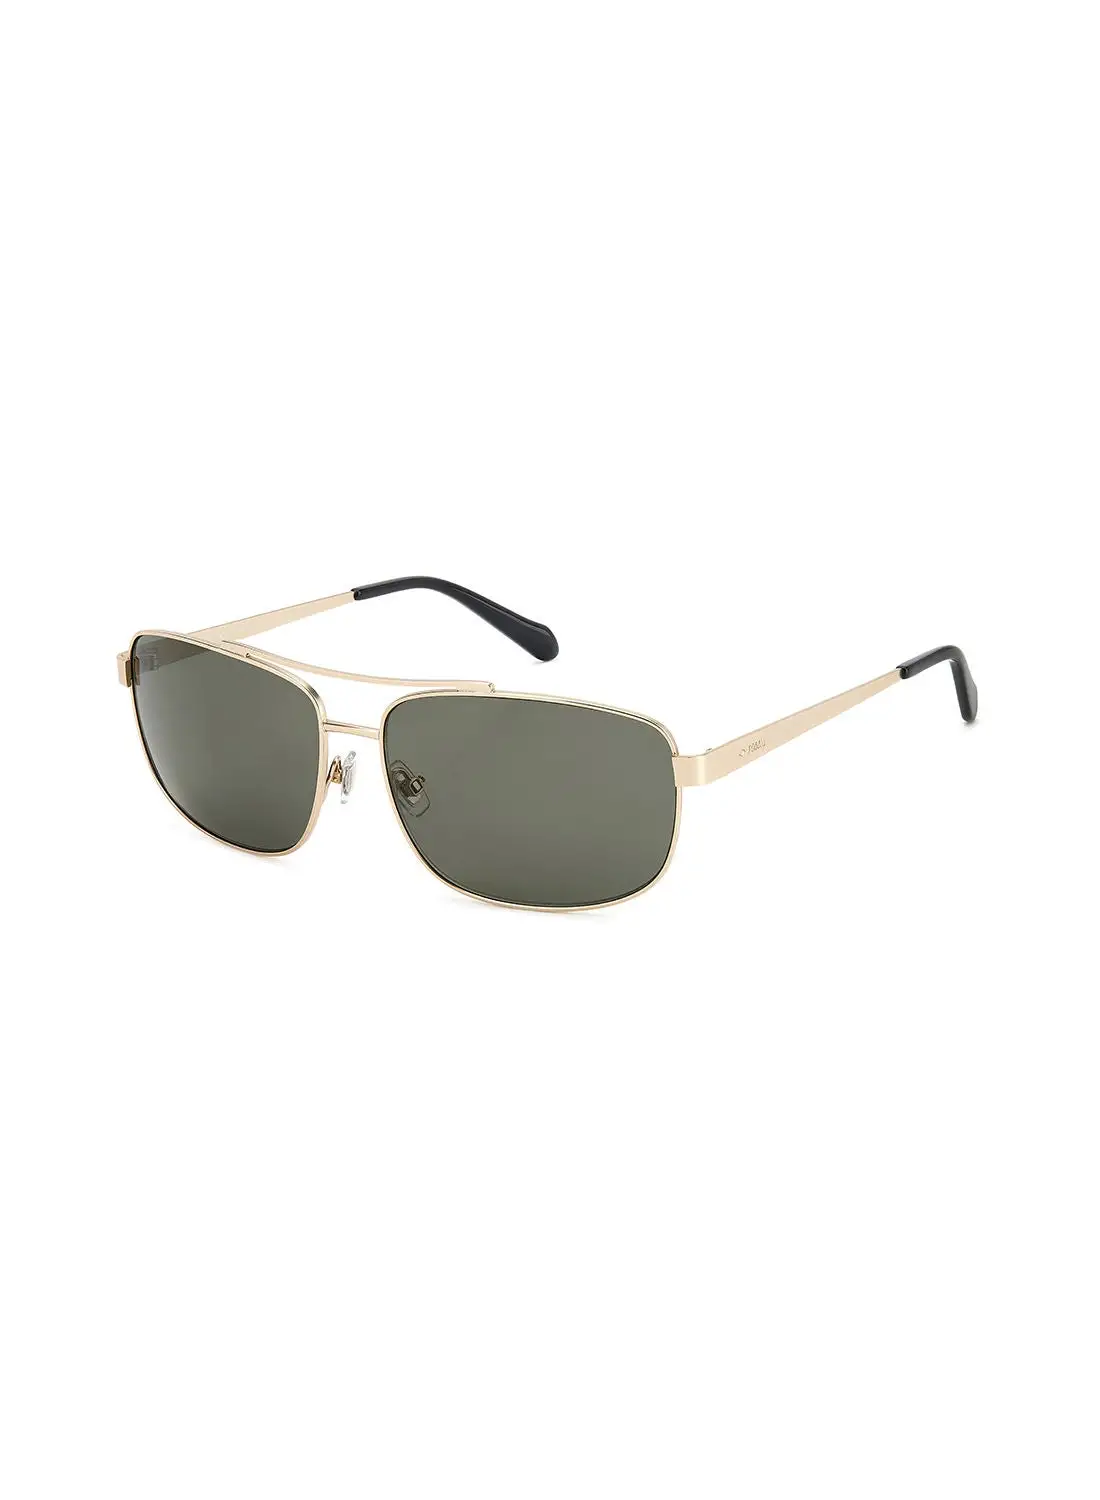 FOSSIL Men's UV Protection Rectangular Sunglasses - Fos 2130/G/S Mt Ligh G 61 - Lens Size: 61 Mm